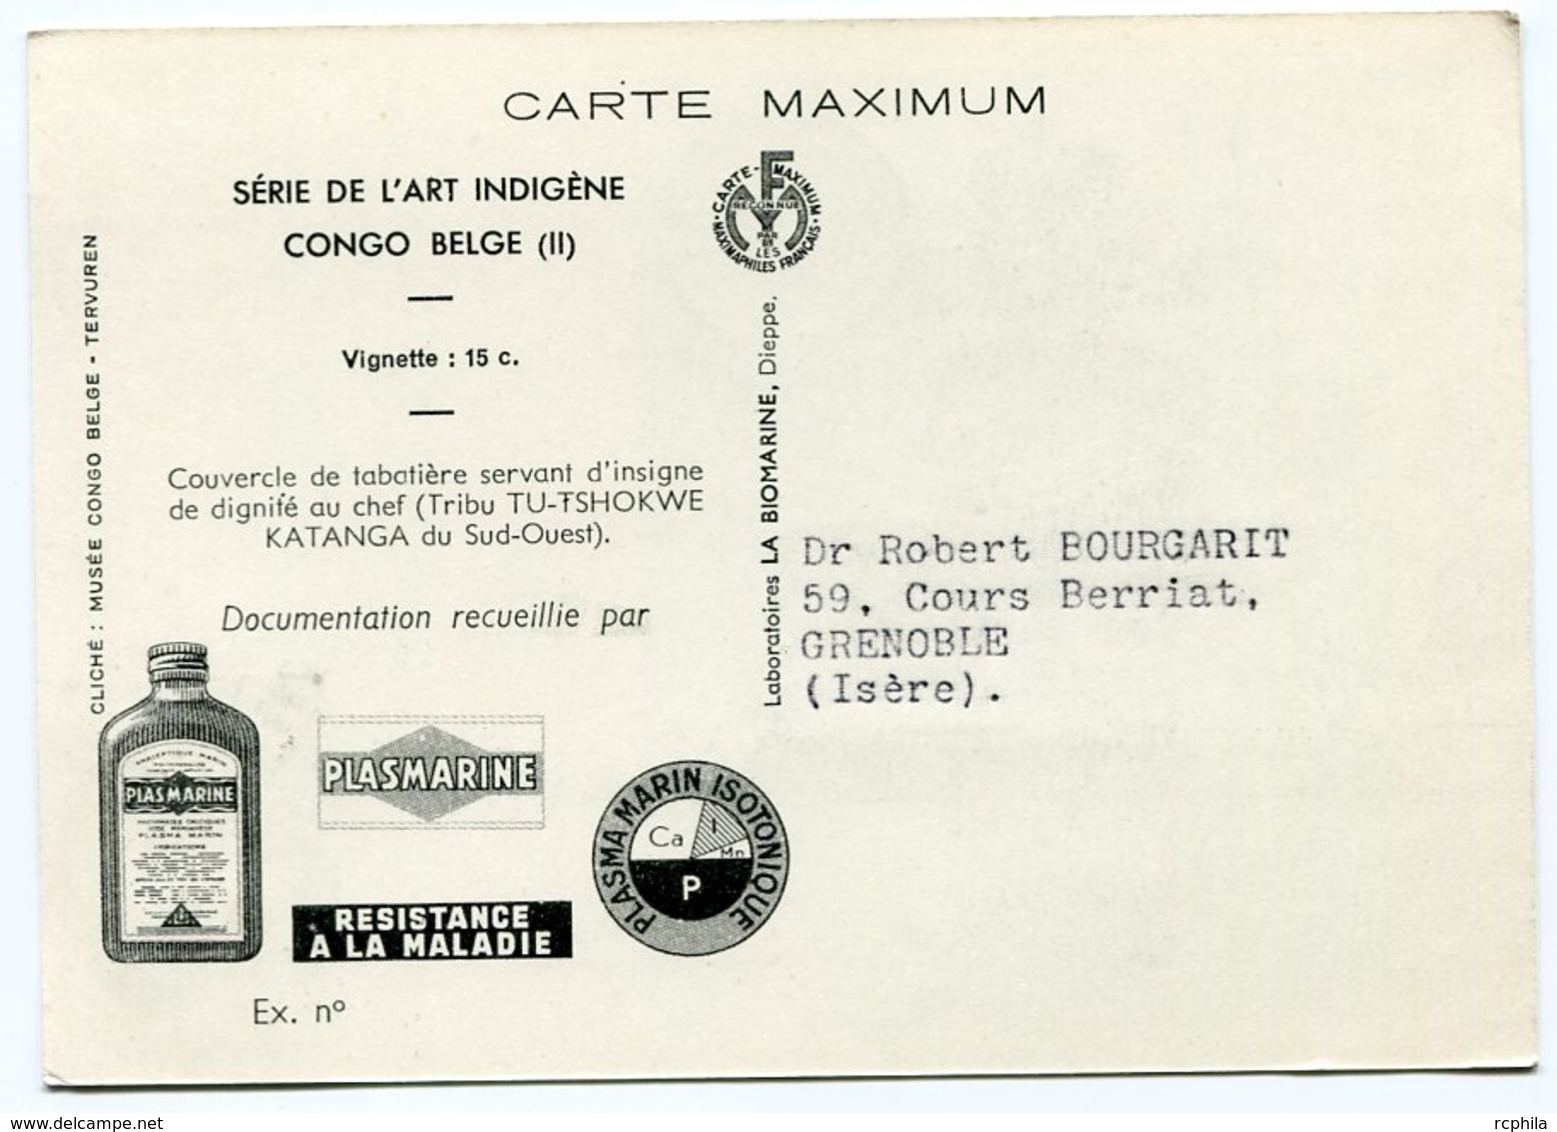 RC 12840 CONGO BELGE 1952 CARTE PLASMARINE PUBLICITÉ ADRESSÉE AUX MEDECINS - Lettres & Documents